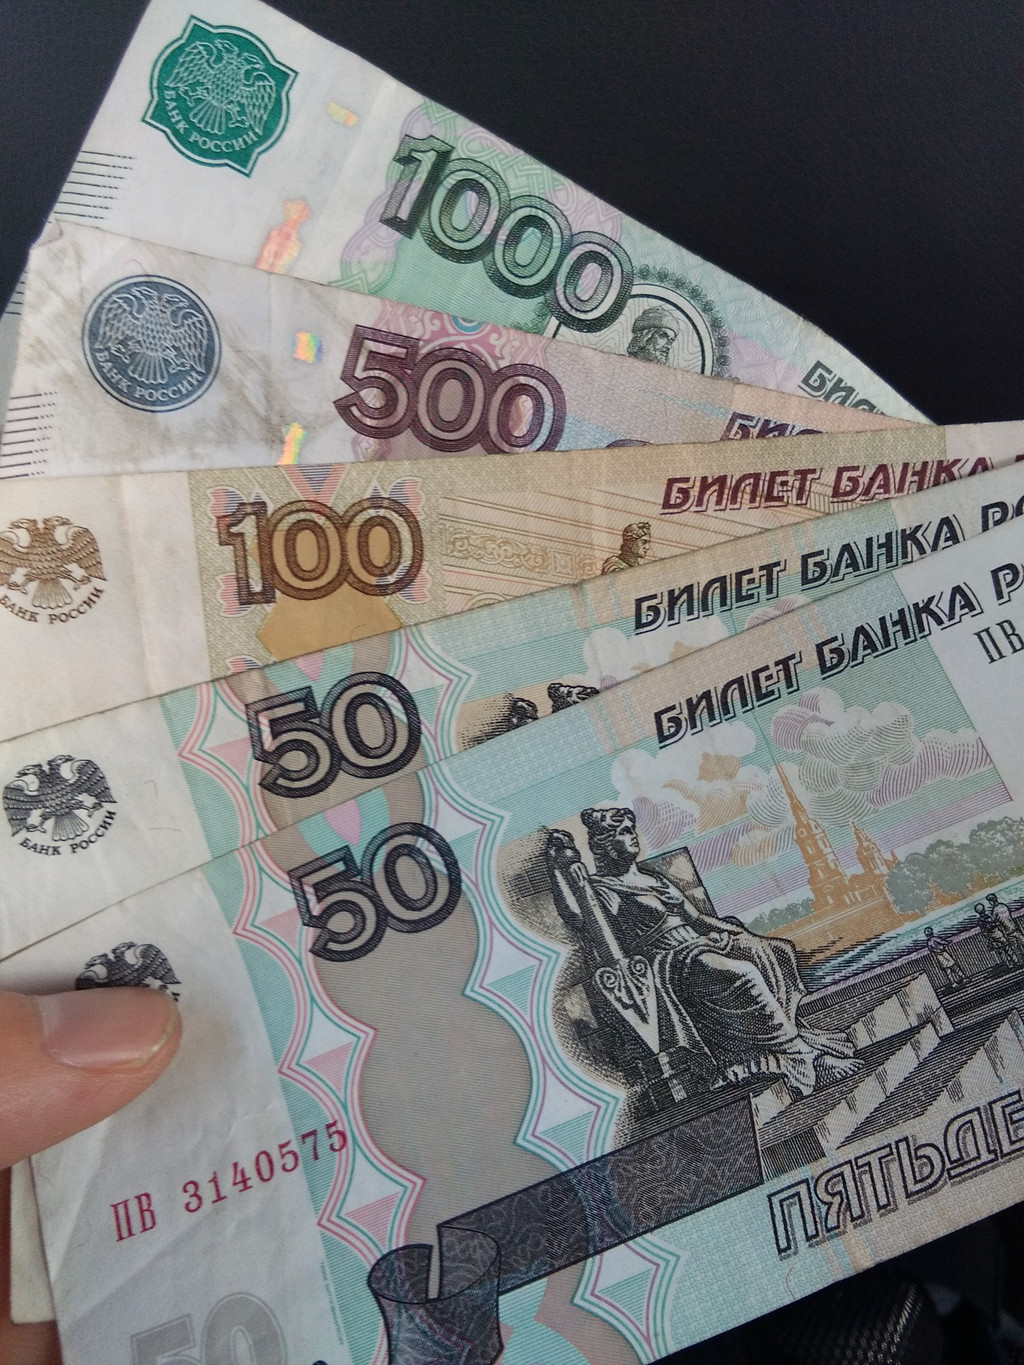            俄罗斯卢布,与人民币